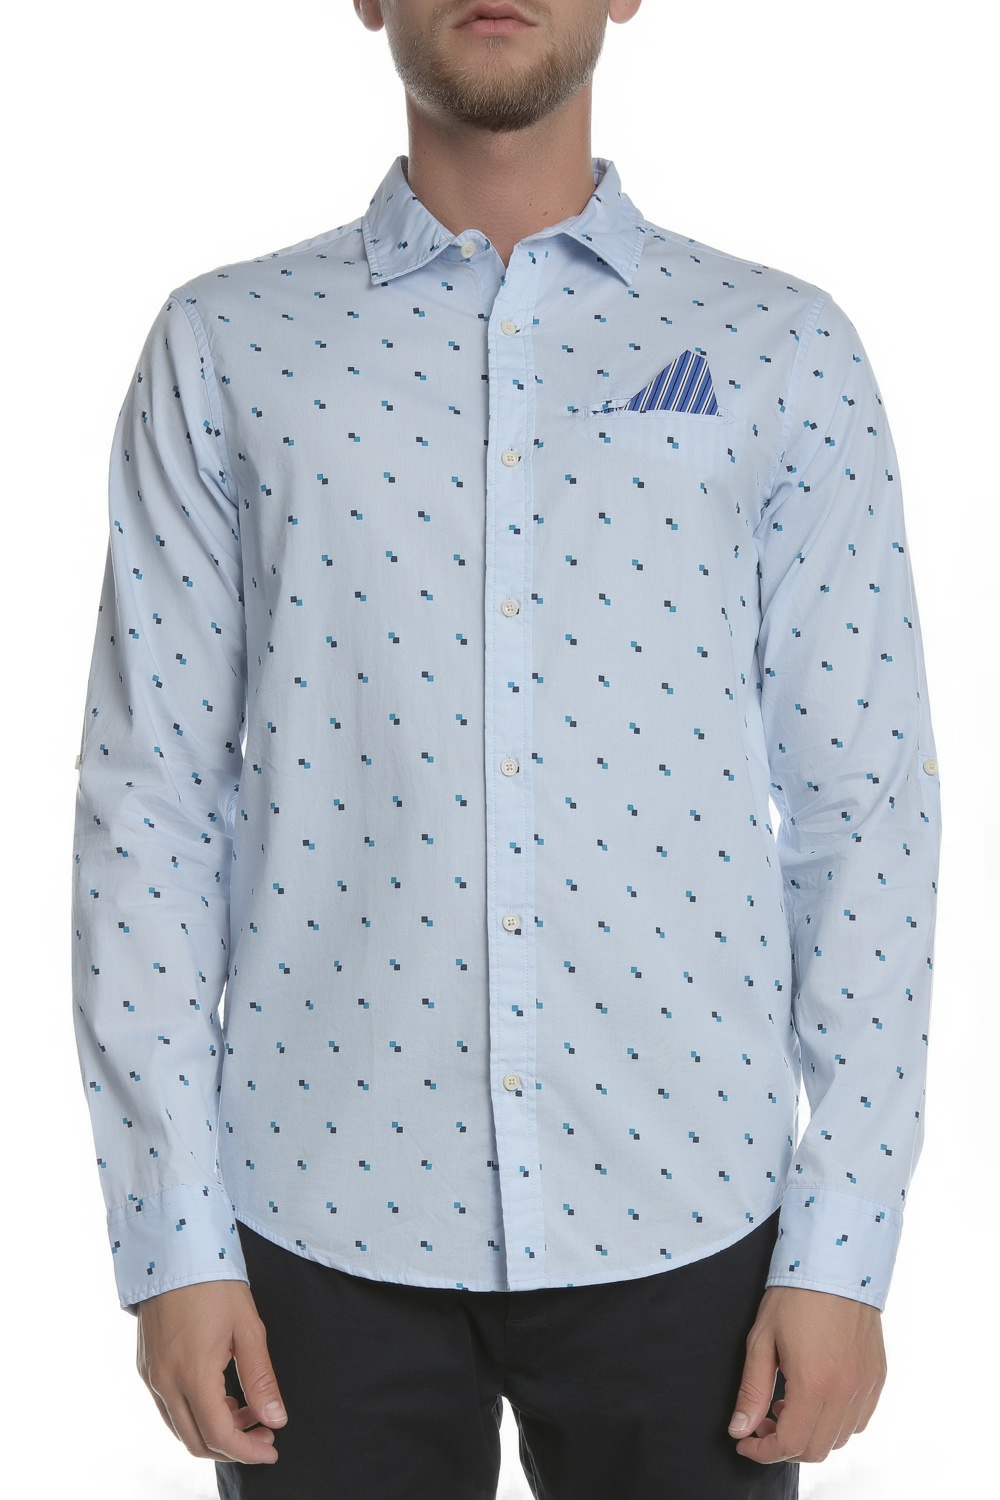 Ανδρικά/Ρούχα/Πουκάμισα/Μακρυμάνικα SCOTCH & SODA - Ανδρικό πουκάμισο SCOTCH & SODA γαλάζιο